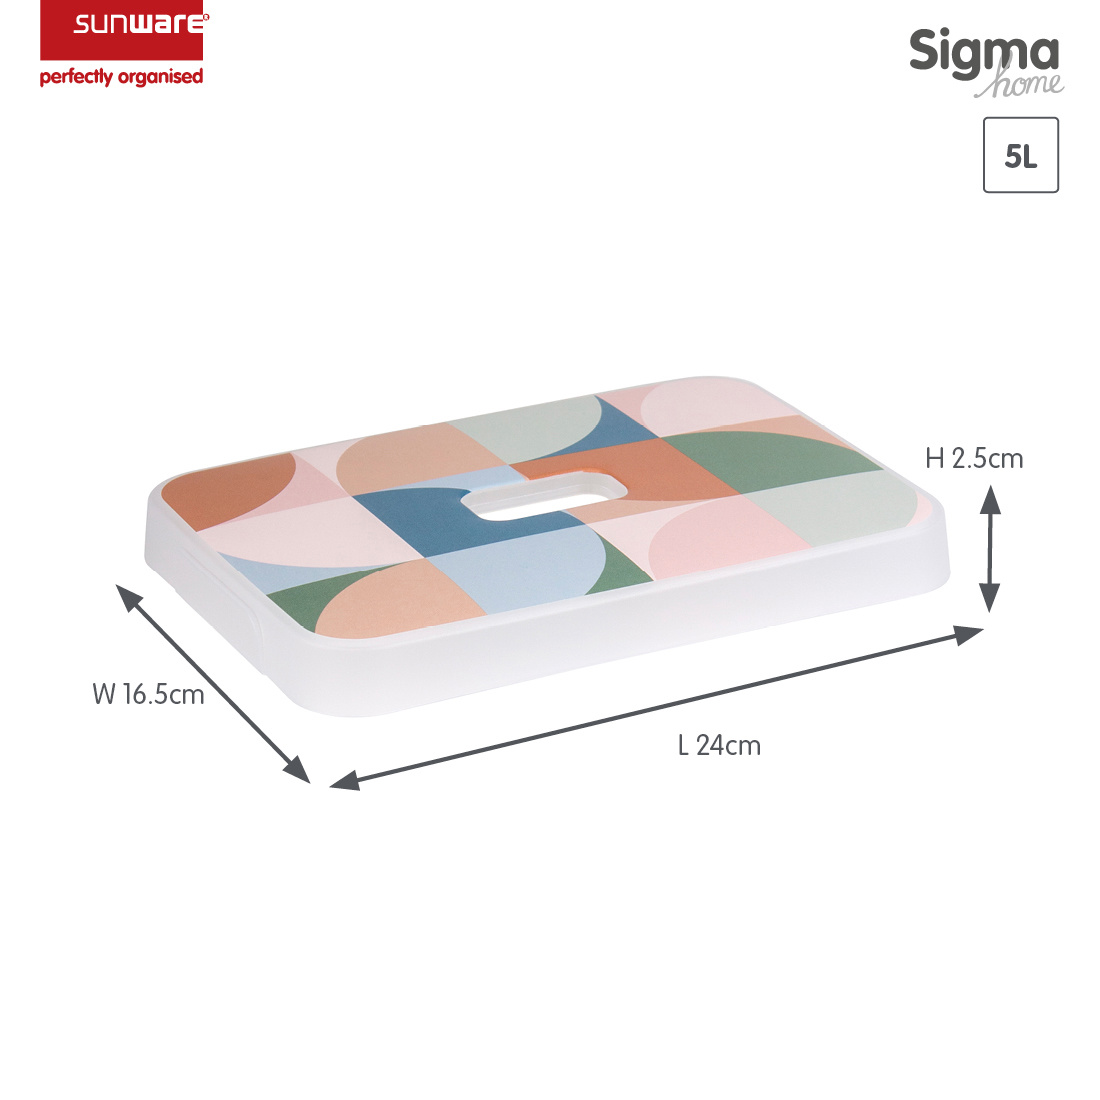 Sigma home Deckel Dekor terra für Aufbewahrungsbox 5L